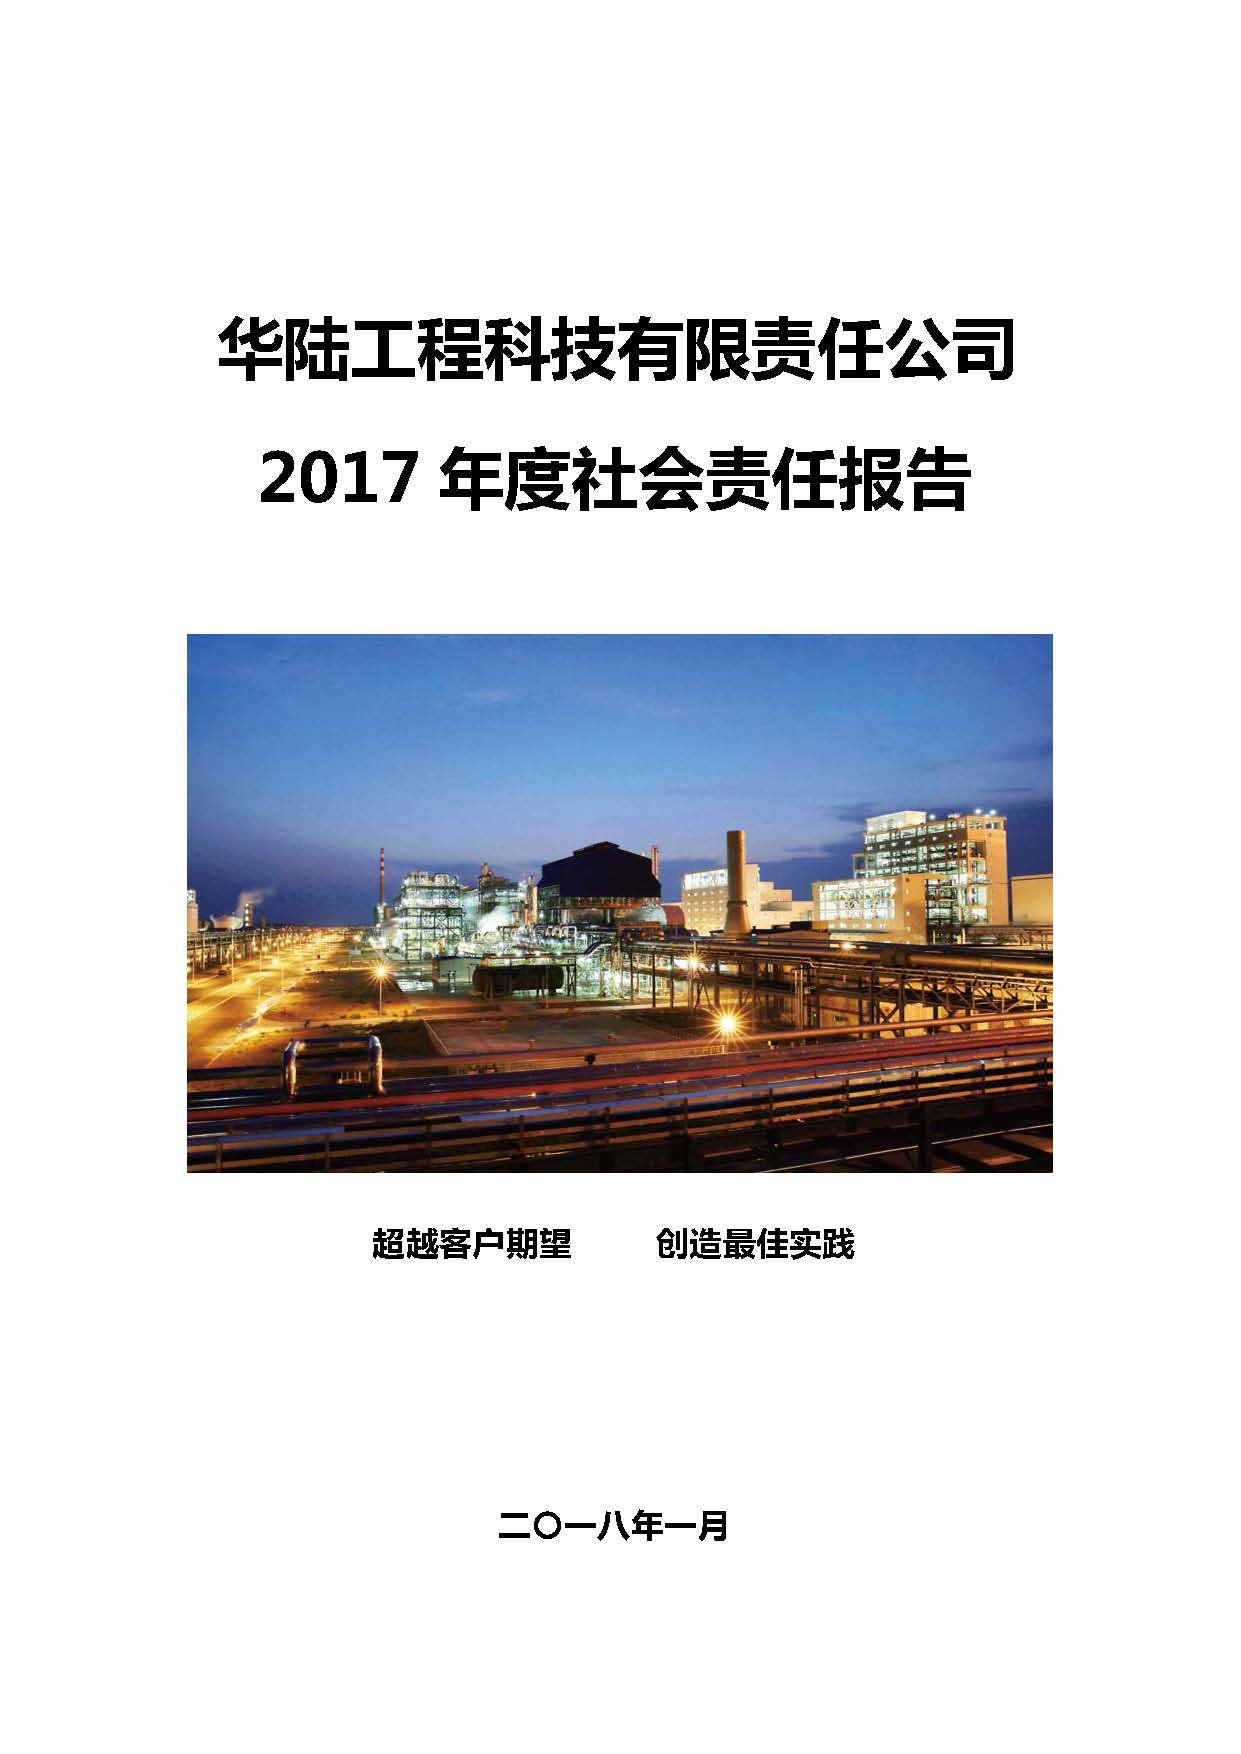 华陆工程科技有限责任公司2017年社会责任报告_页面_01.jpg